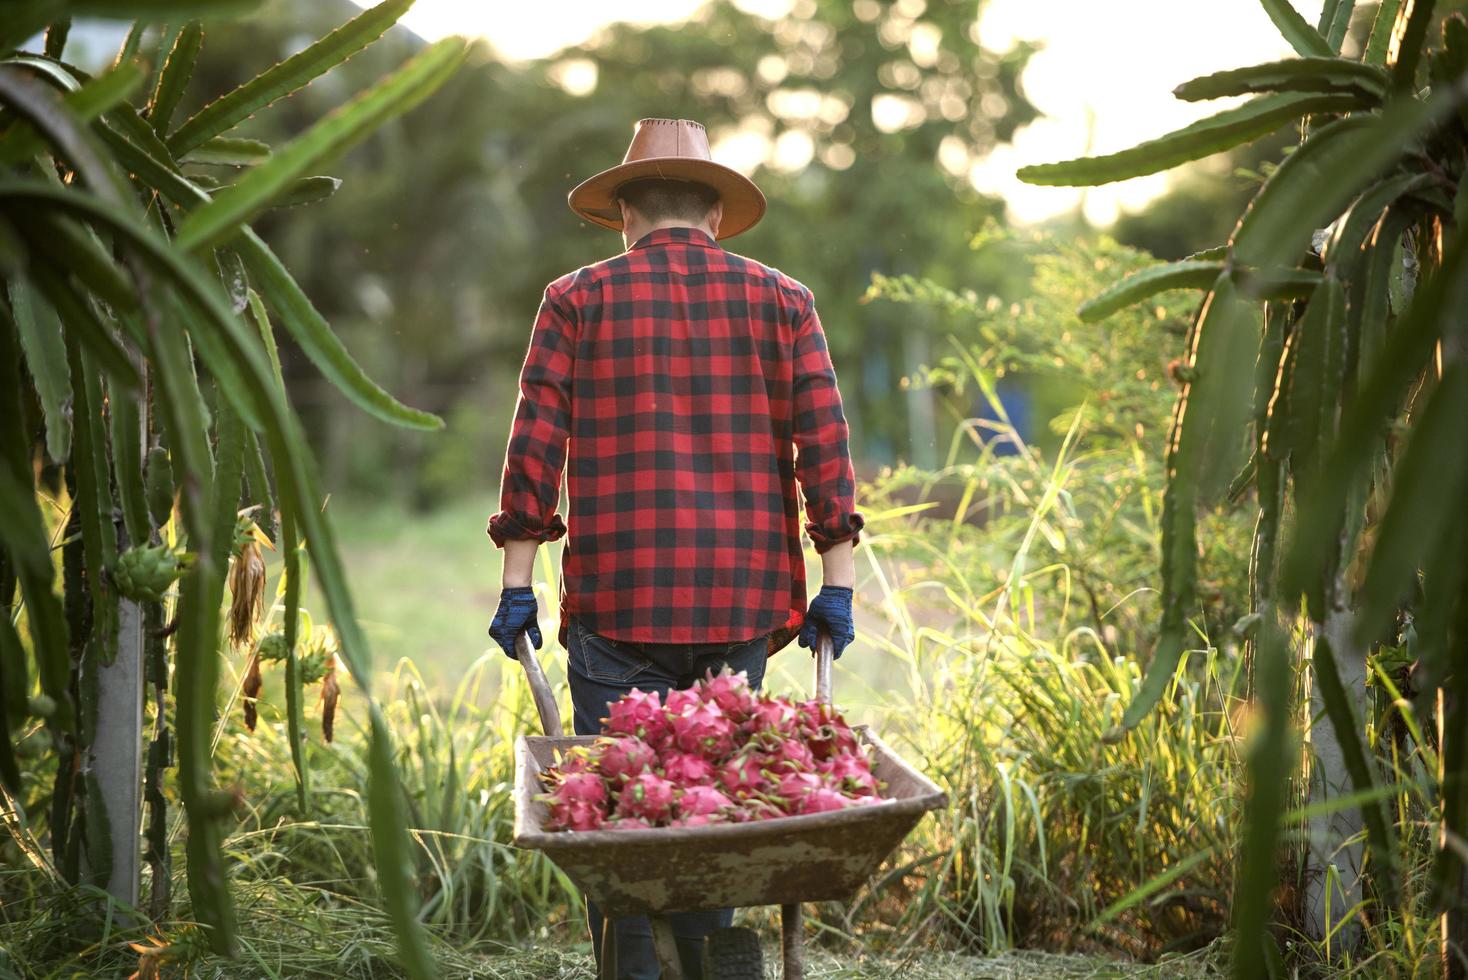 agriculteurs asiatiques souriants dans des plantations de fruits du dragon, agriculteurs cueillant des produits photo